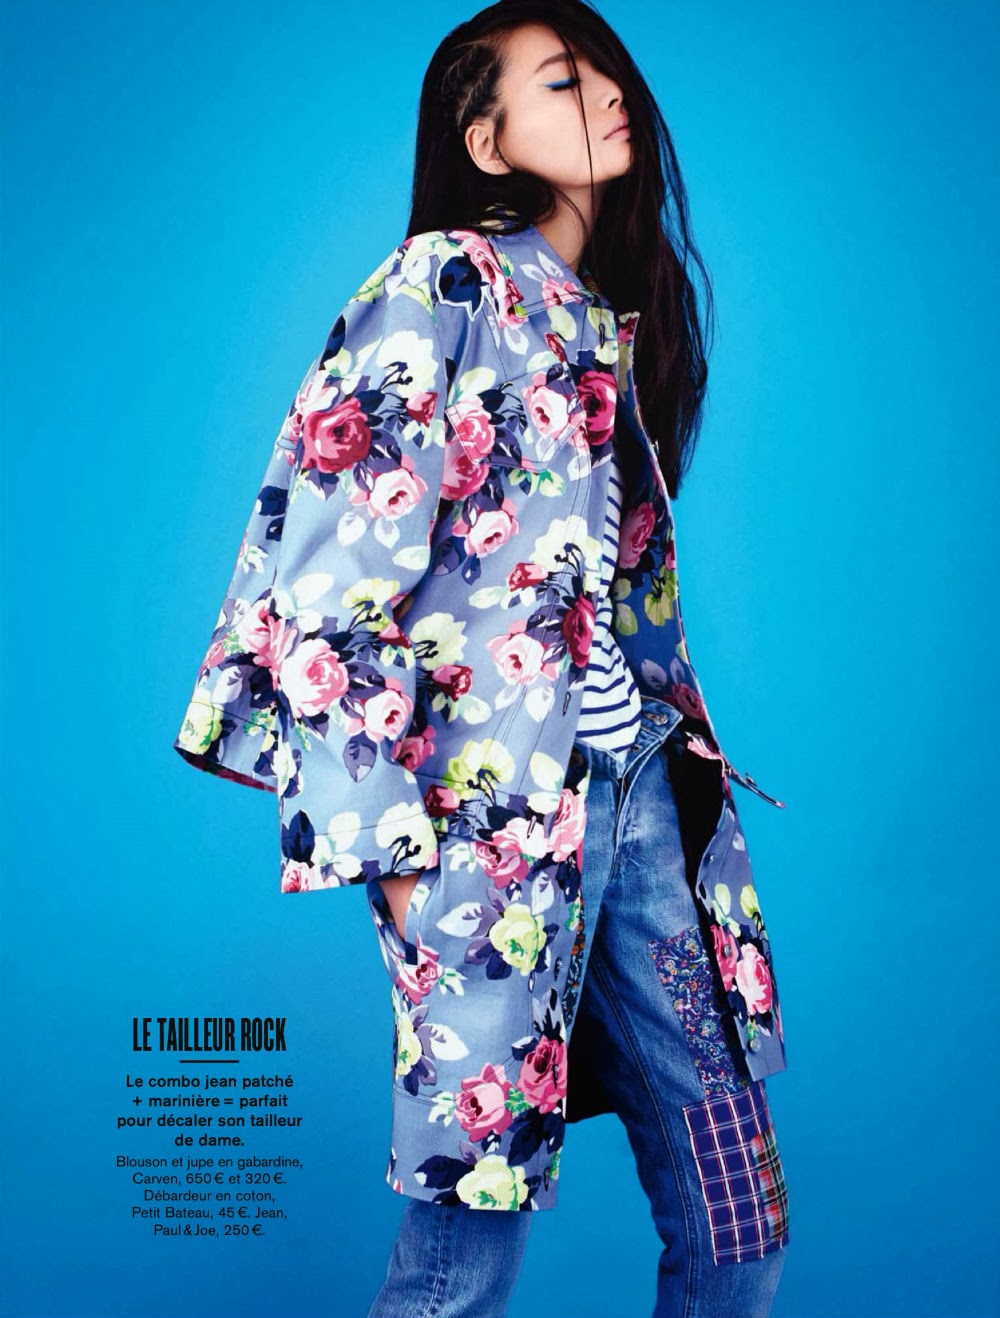 Magazine Photoshoot : Li Wei Photoshot For Glamour Magazine France February 2014 Issue 